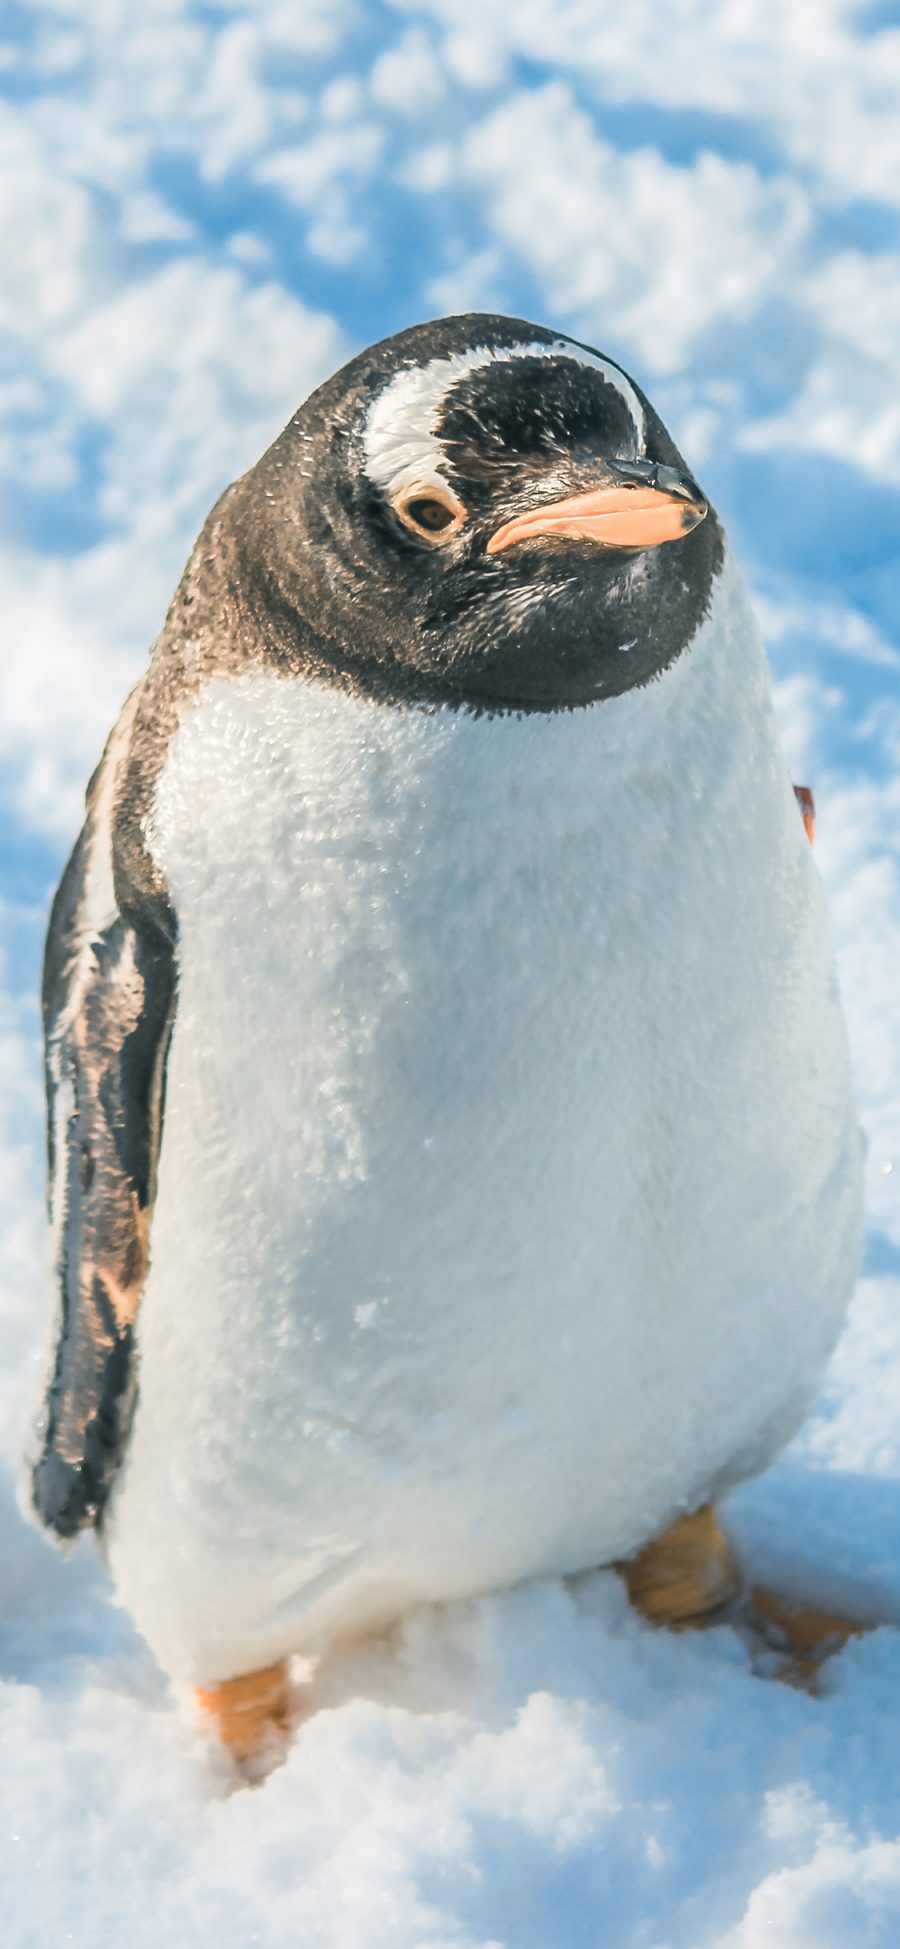 [2436×1125]企鹅 雪地 南极 寒冷 可爱 苹果手机壁纸图片